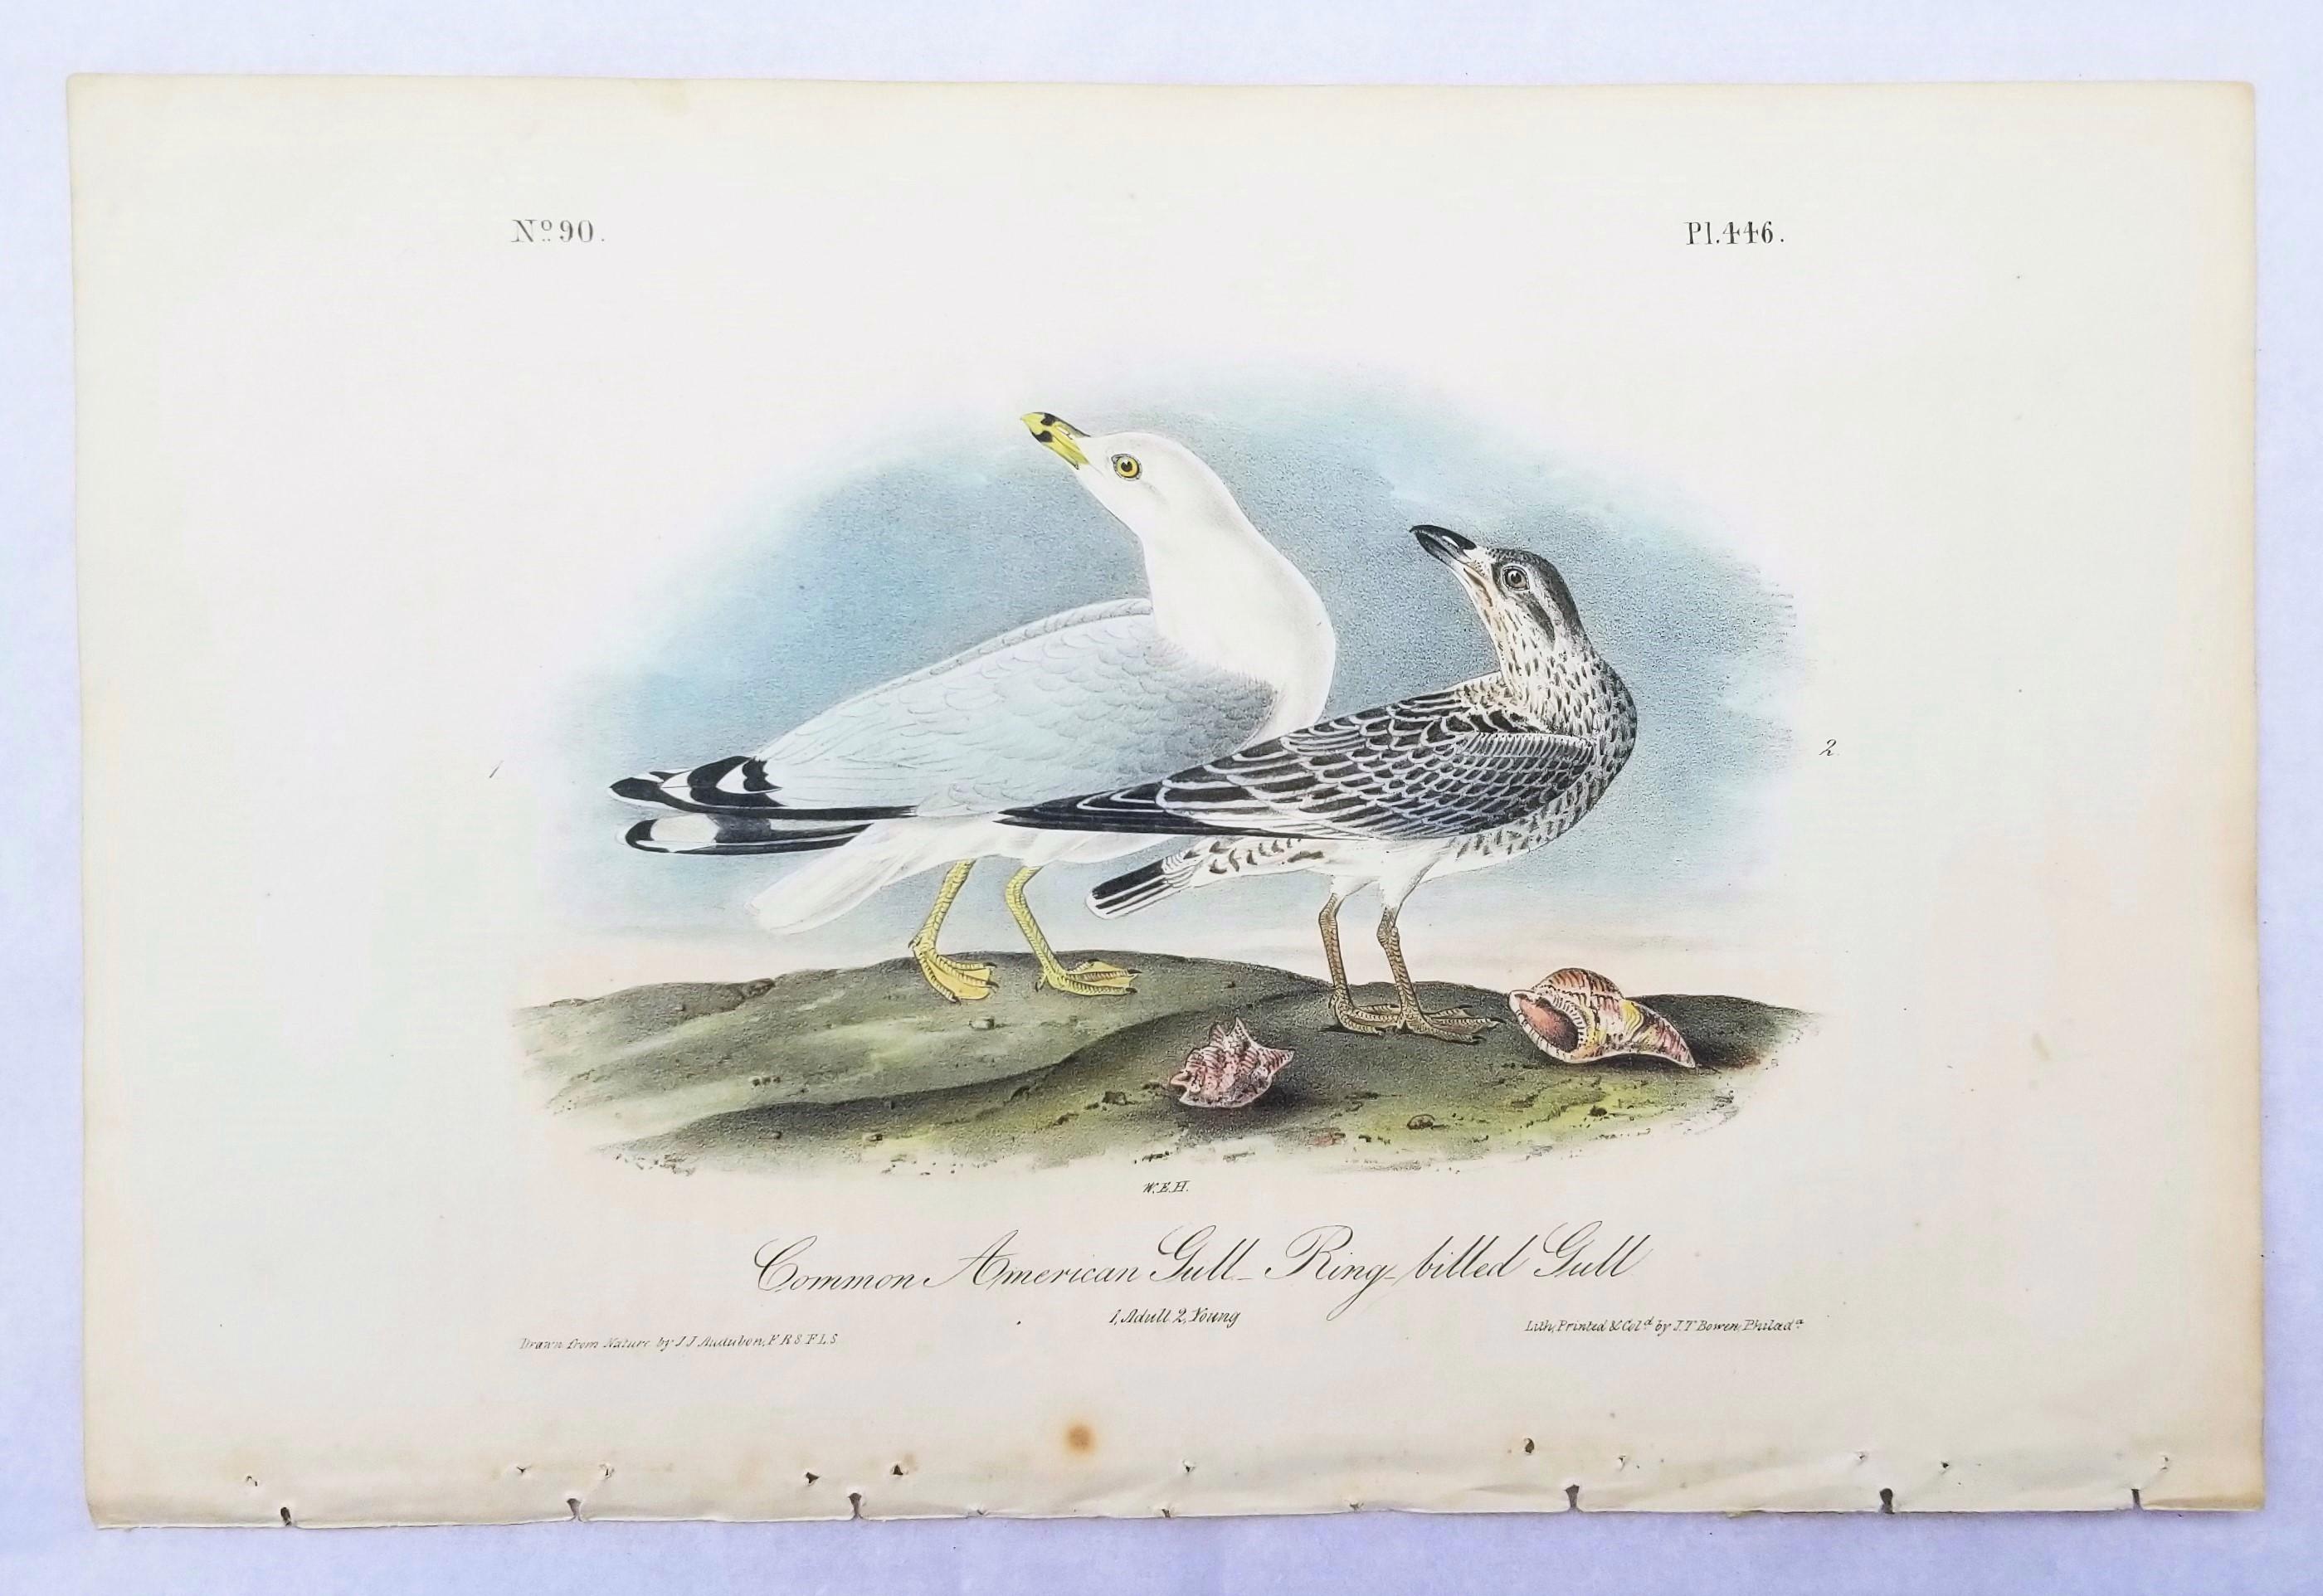 Common American Gull - Ringgeflochtener Gull /// Ornithology Vogel Meereslandschaft Strandhimmel (Viktorianisch), Print, von John James Audubon